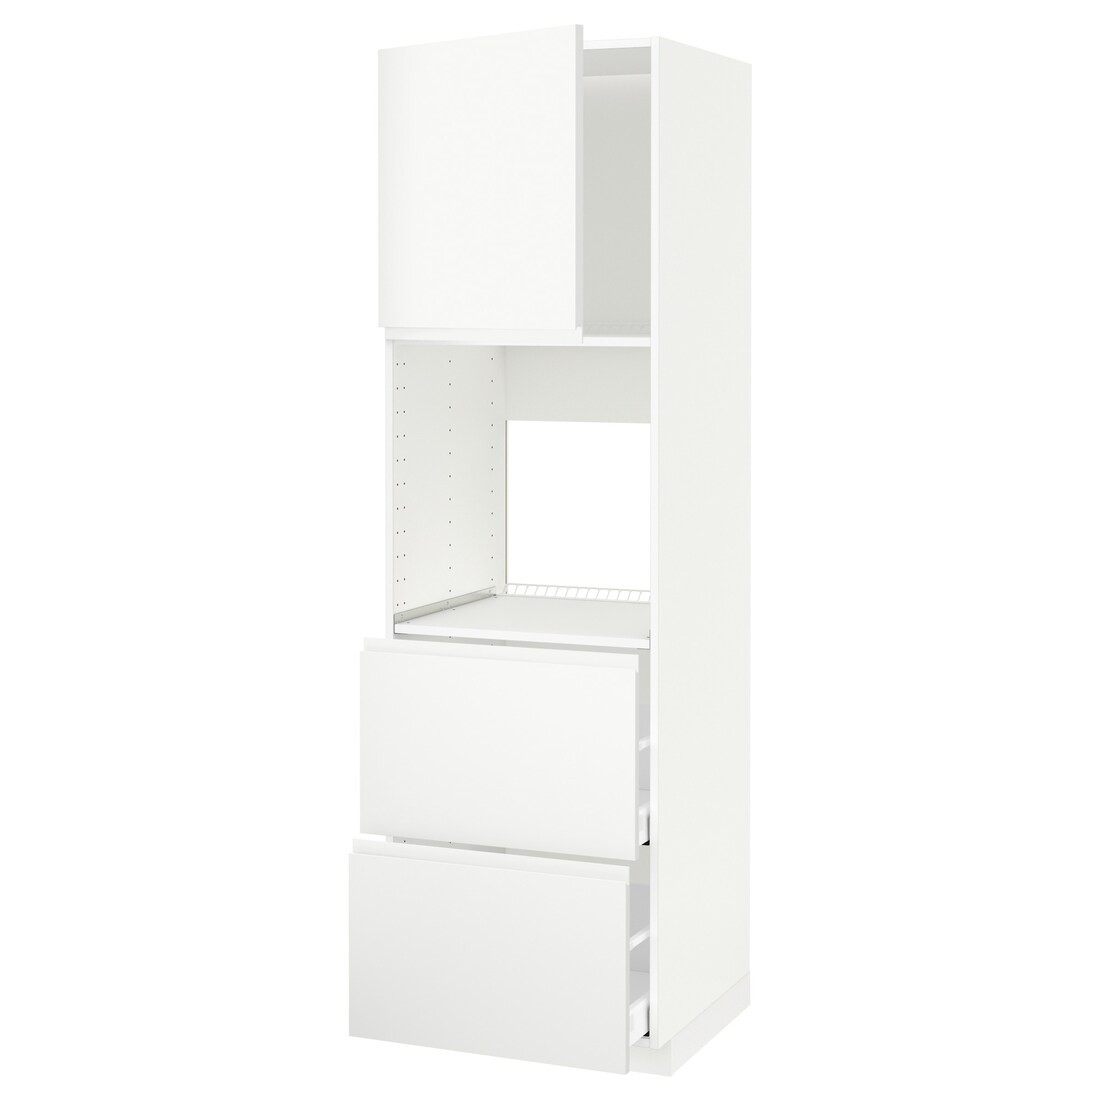 IKEA METOD МЕТОД / MAXIMERA МАКСИМЕРА Высокий шкаф для духовки с дверцей / ящиками, белый / Voxtorp матовый белый, 60x60x200 см 79466798 794.667.98